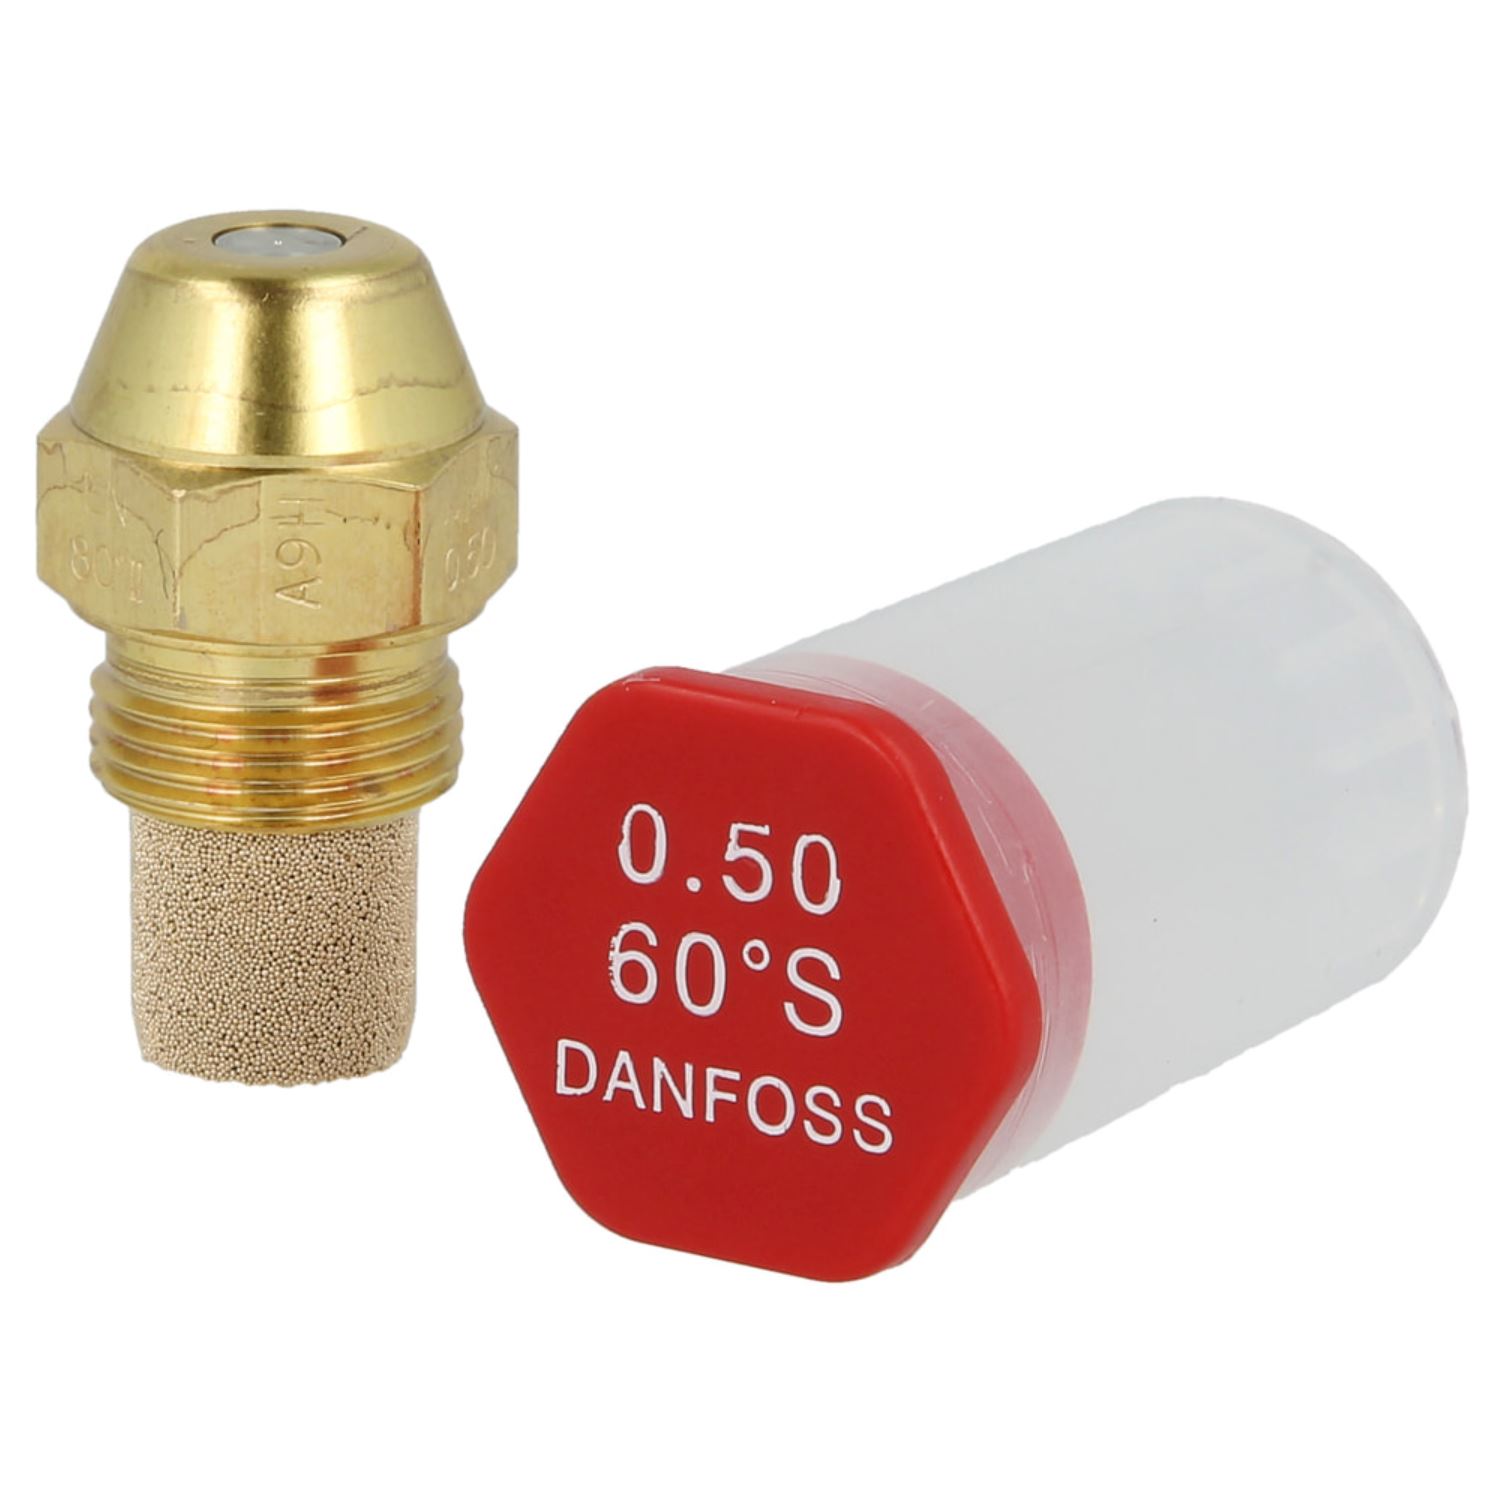 Danfoss-Öldüse 0,50 60°S